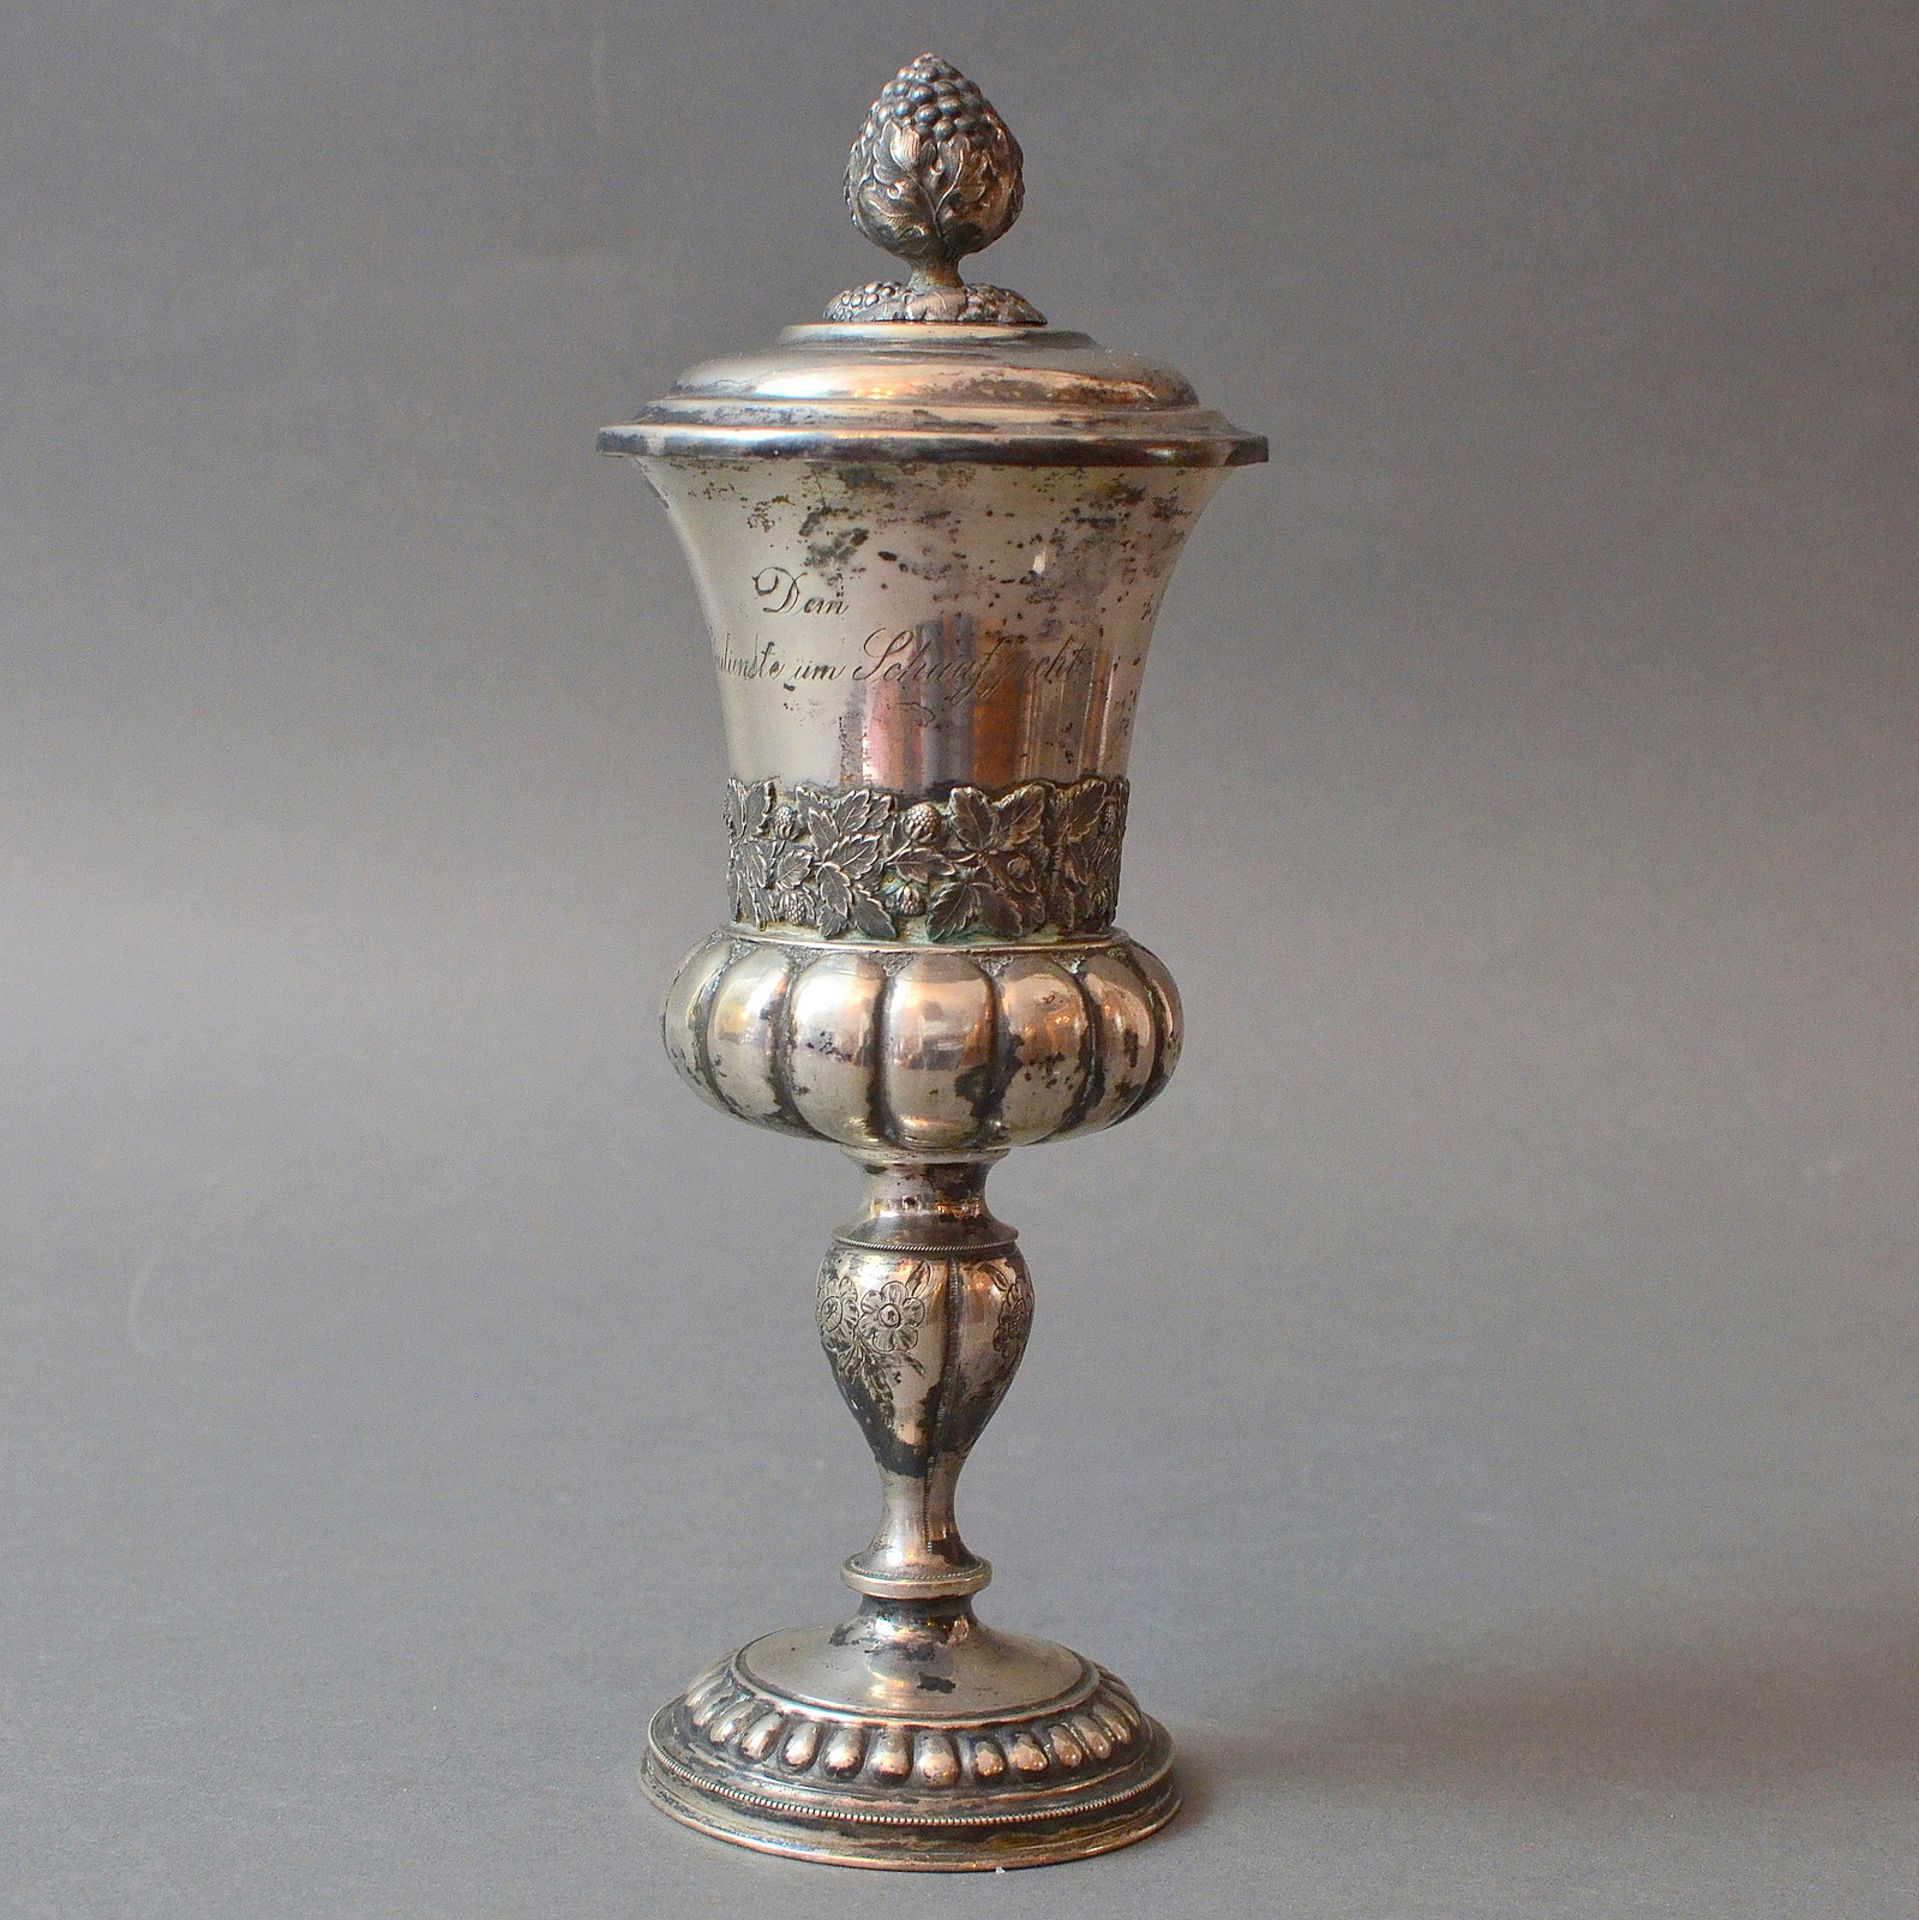 Deckel-Pokal, grav. Thierschau zu Oschatz 1845 "Dem Verdienste um Schaafzucht"